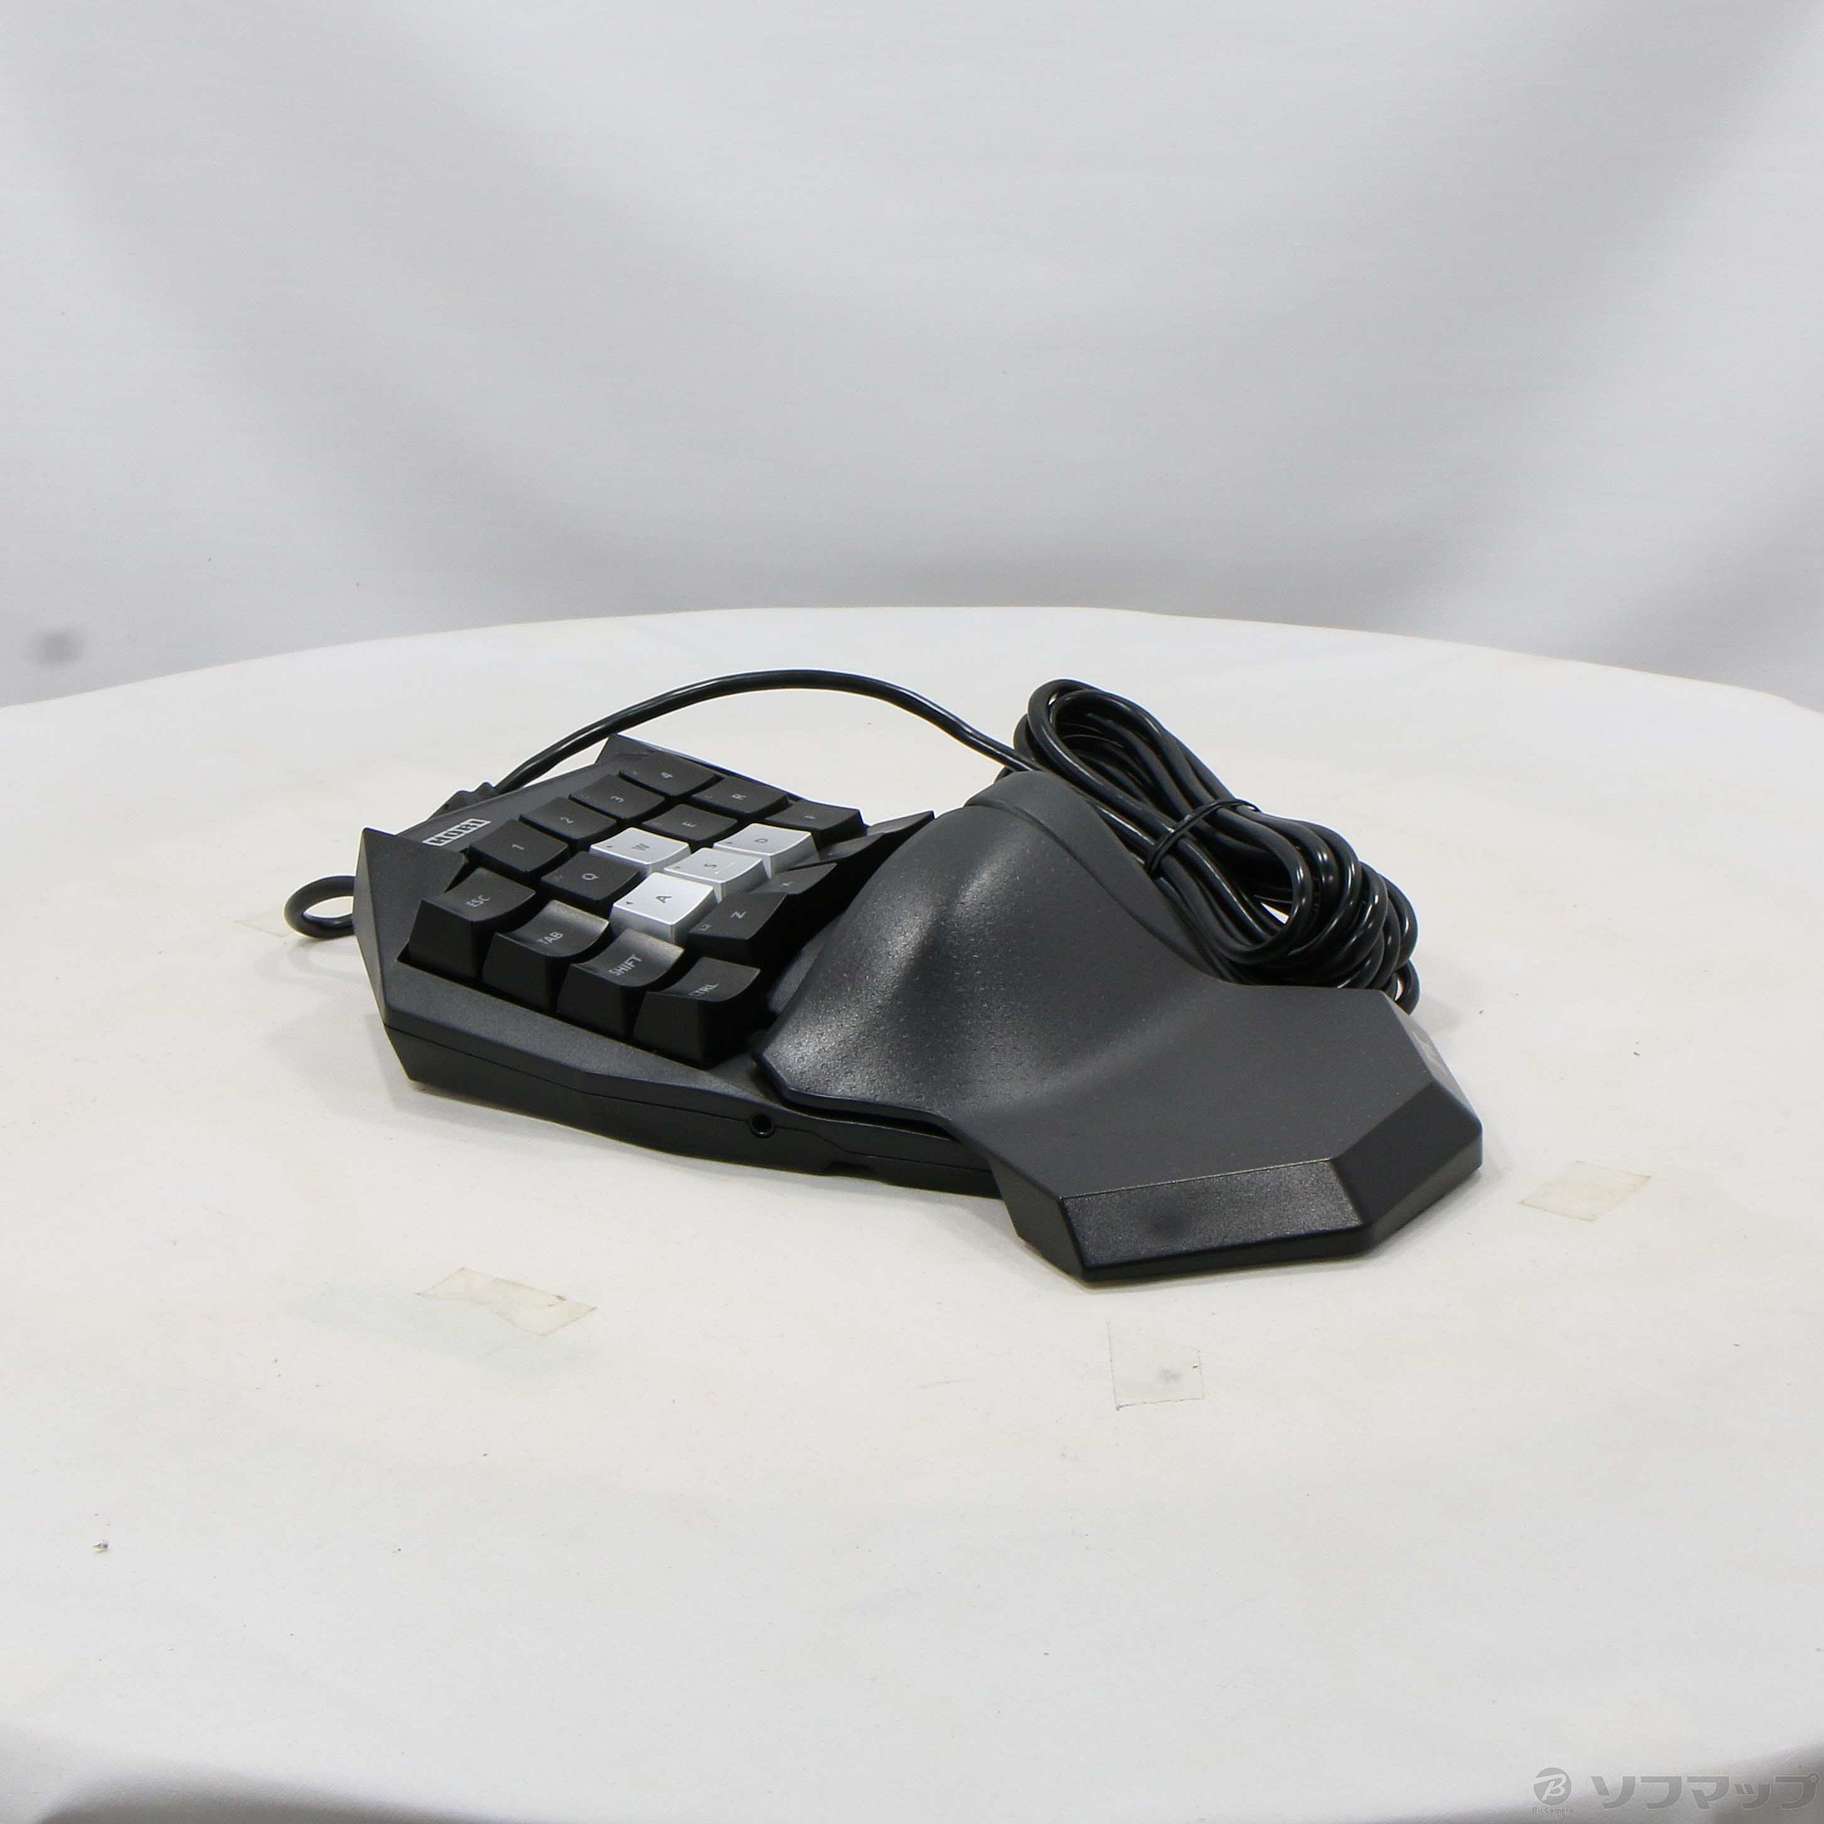 タクティカルアサルトコマンダー メカニカルキーパッド for PlayStation5、PlayStation4、PC 【PS5 PS4】